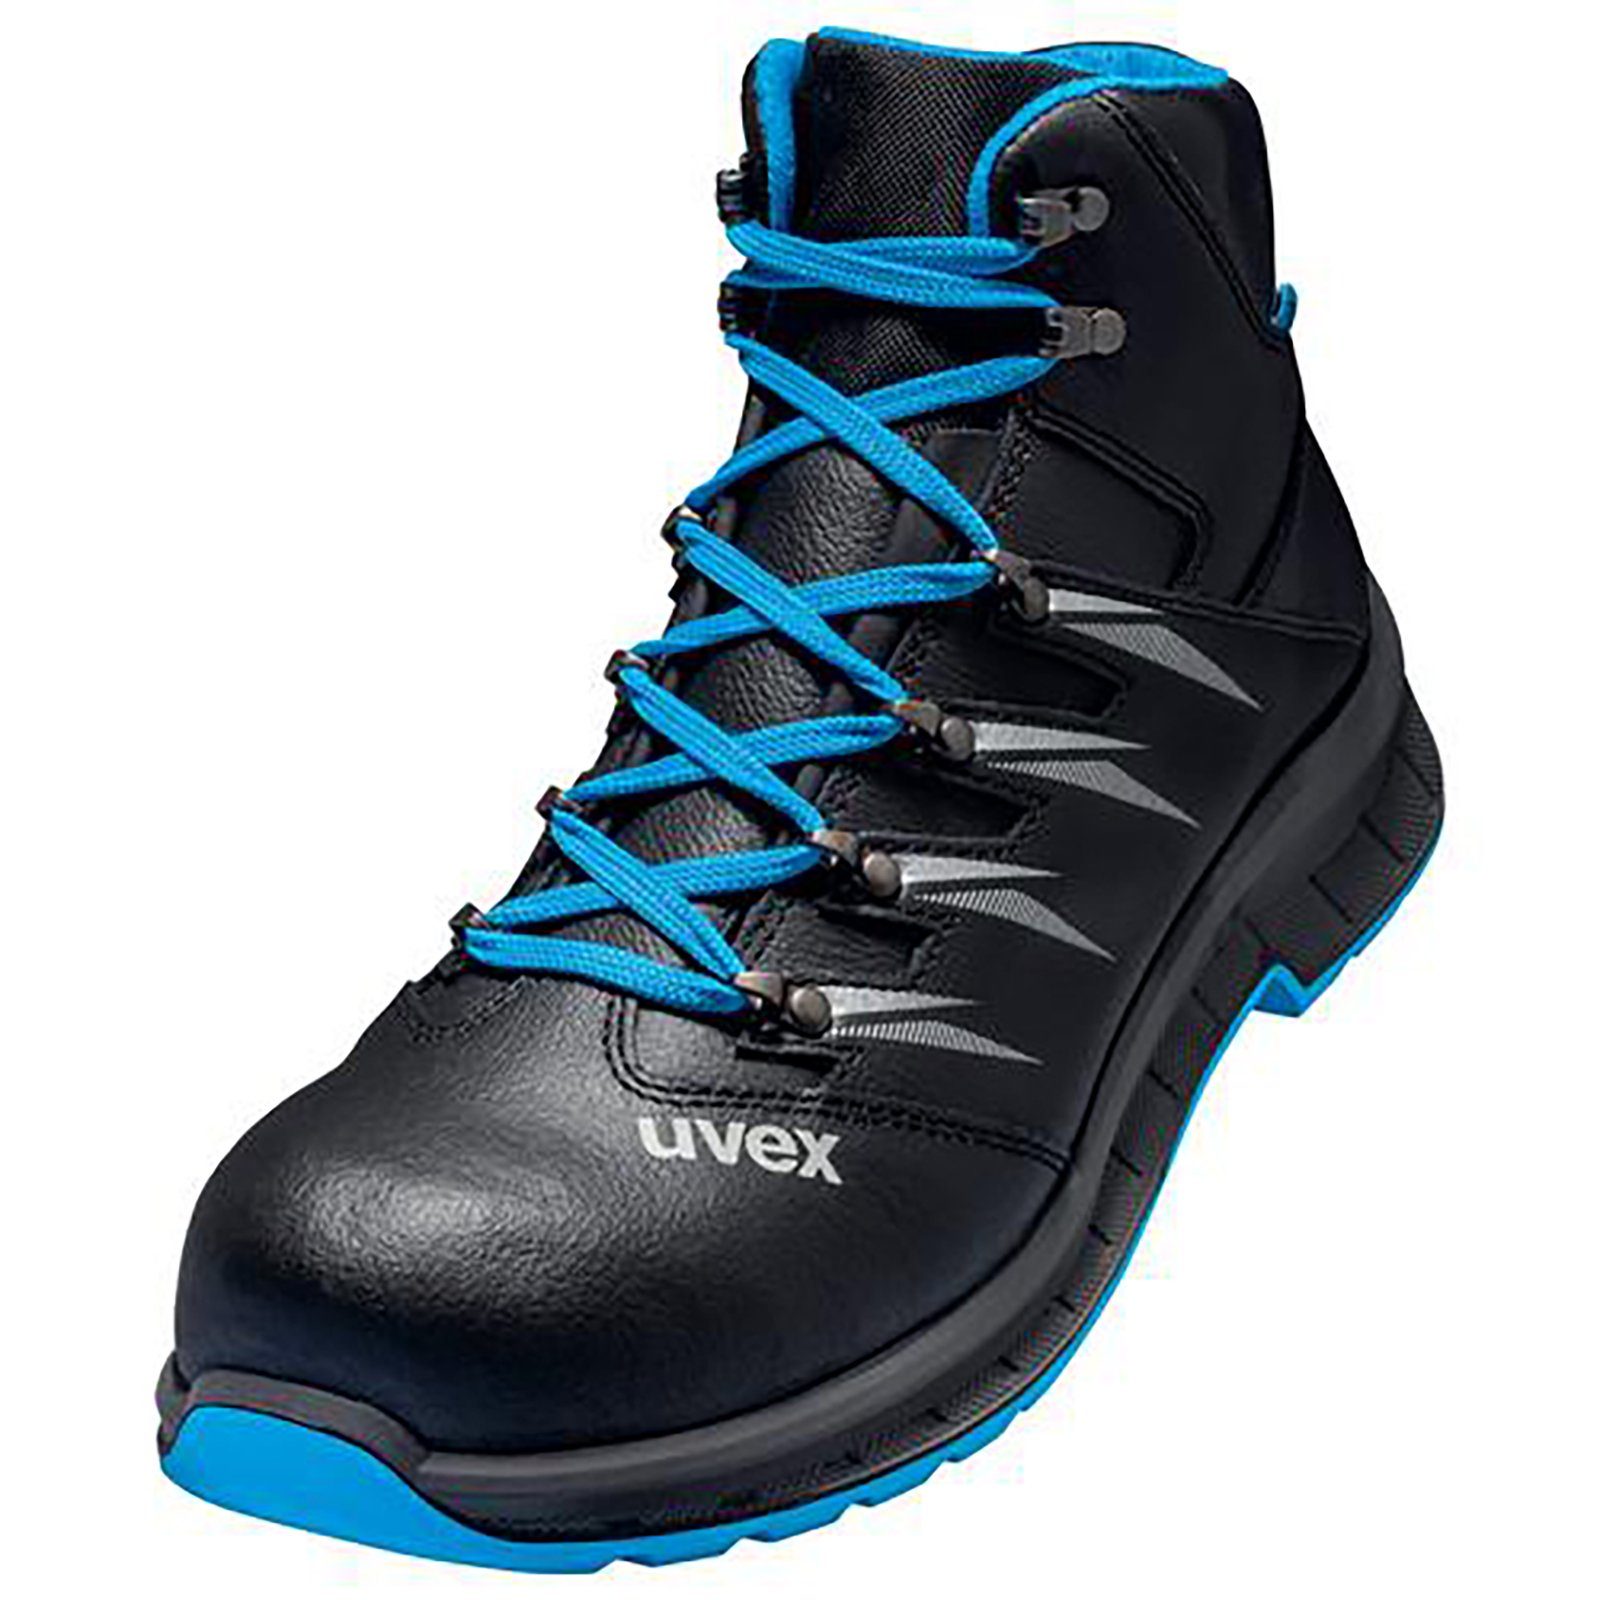 Uvex 2 trend Stiefel S2 blau, schwarz Weite 11 Sicherheitsstiefel